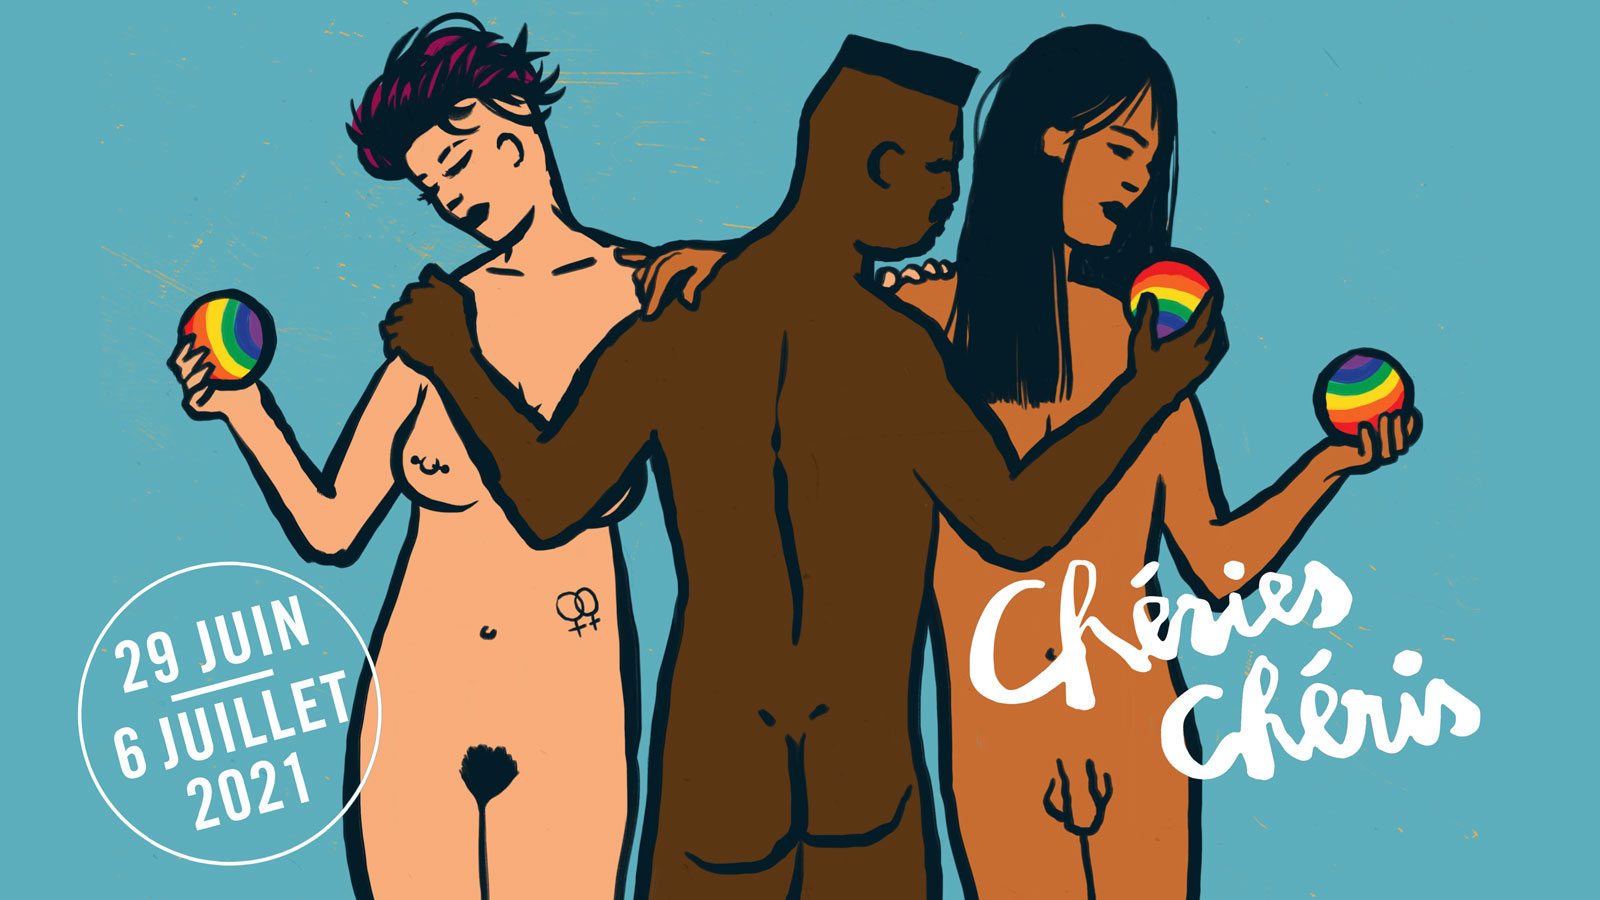 Que nous réserve Chéries-Chéris 2021, le festival de films queer ?